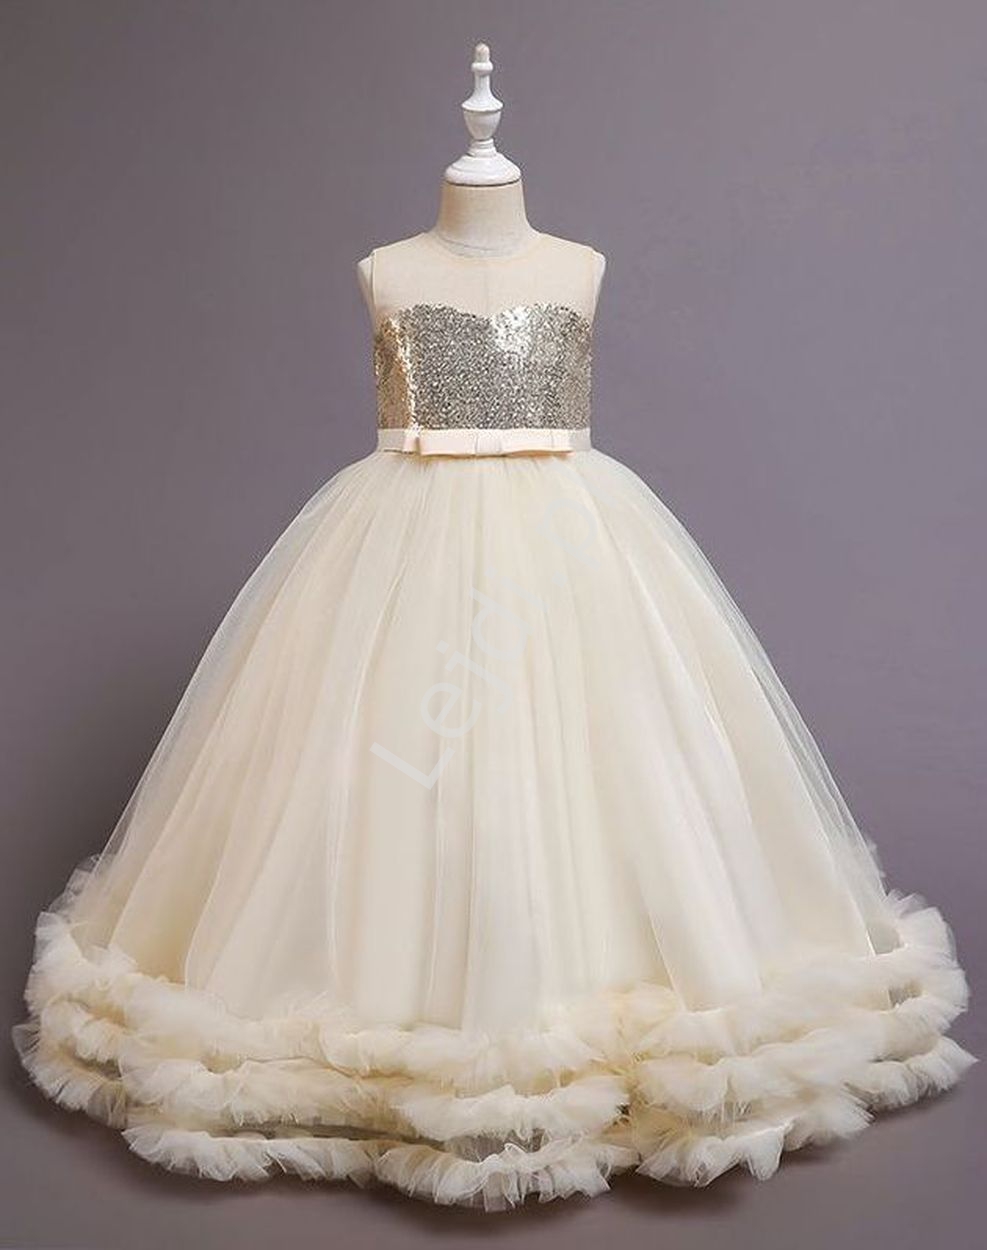 Waniliowa suknia dziecięca na wesele, dla małej druhny, balowa suknia dla dziewczynki 8001 - Lejdi